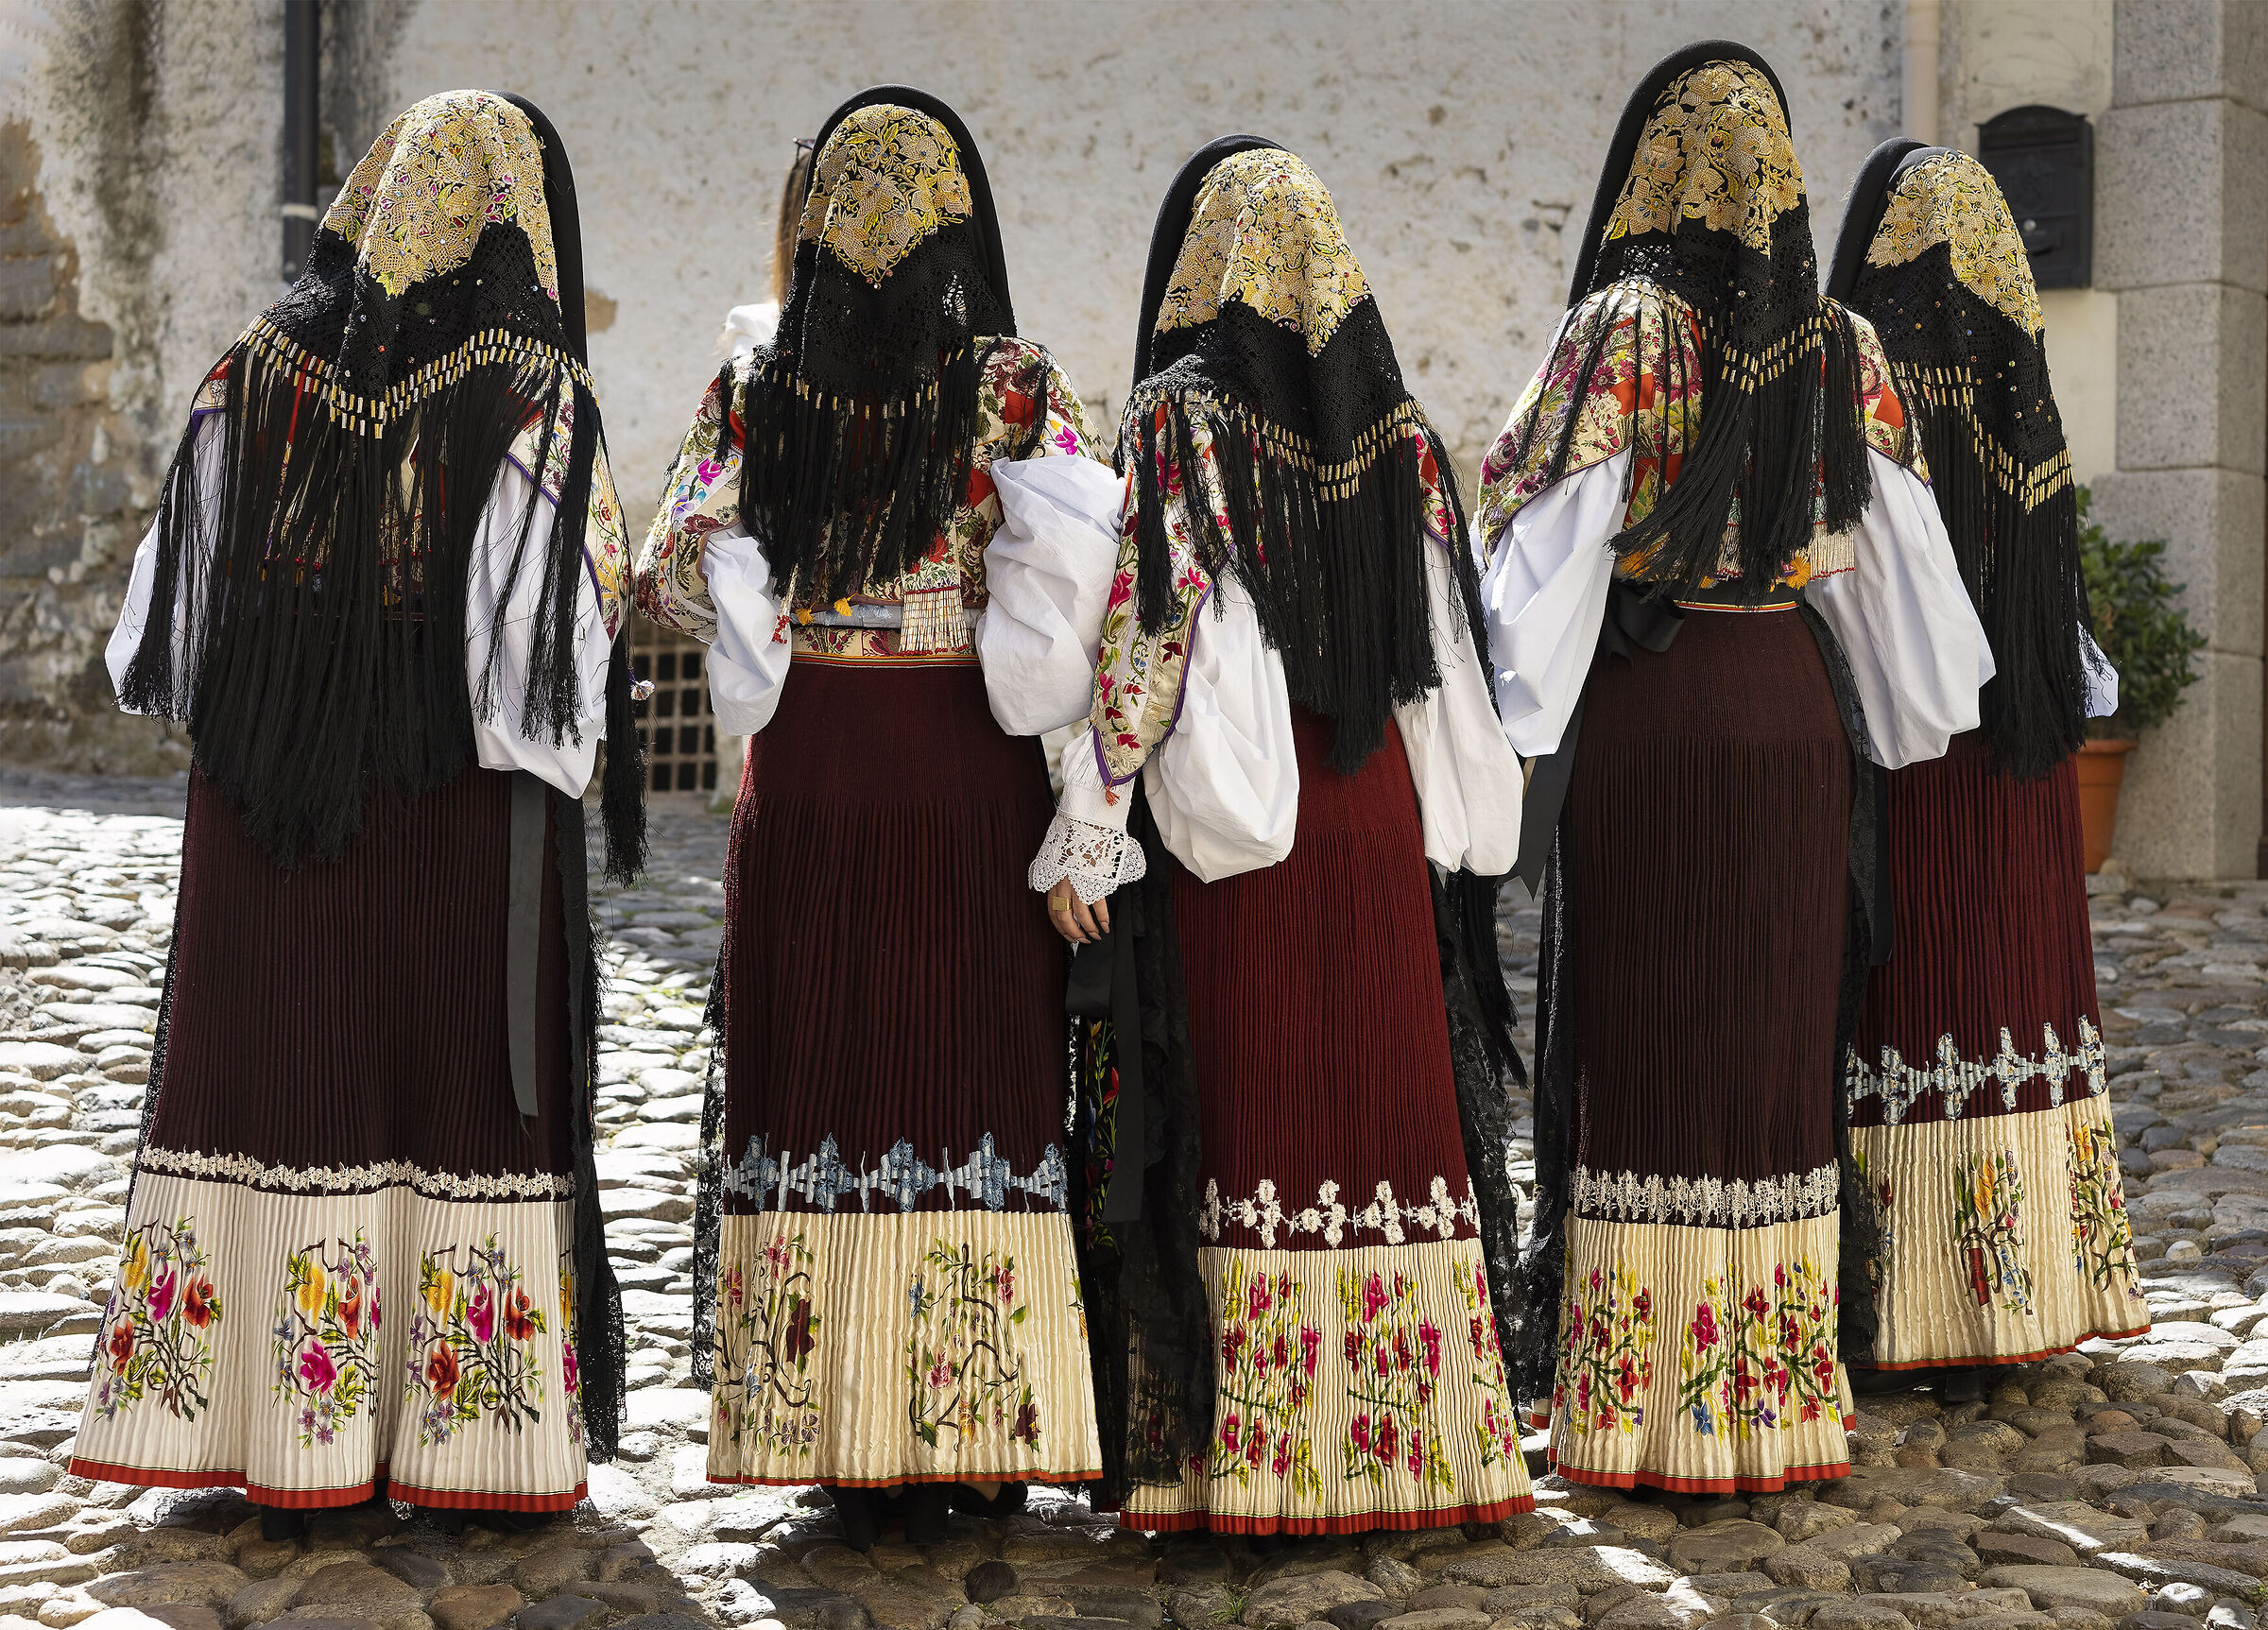 L'abito tradizionale femminile di Oliena...